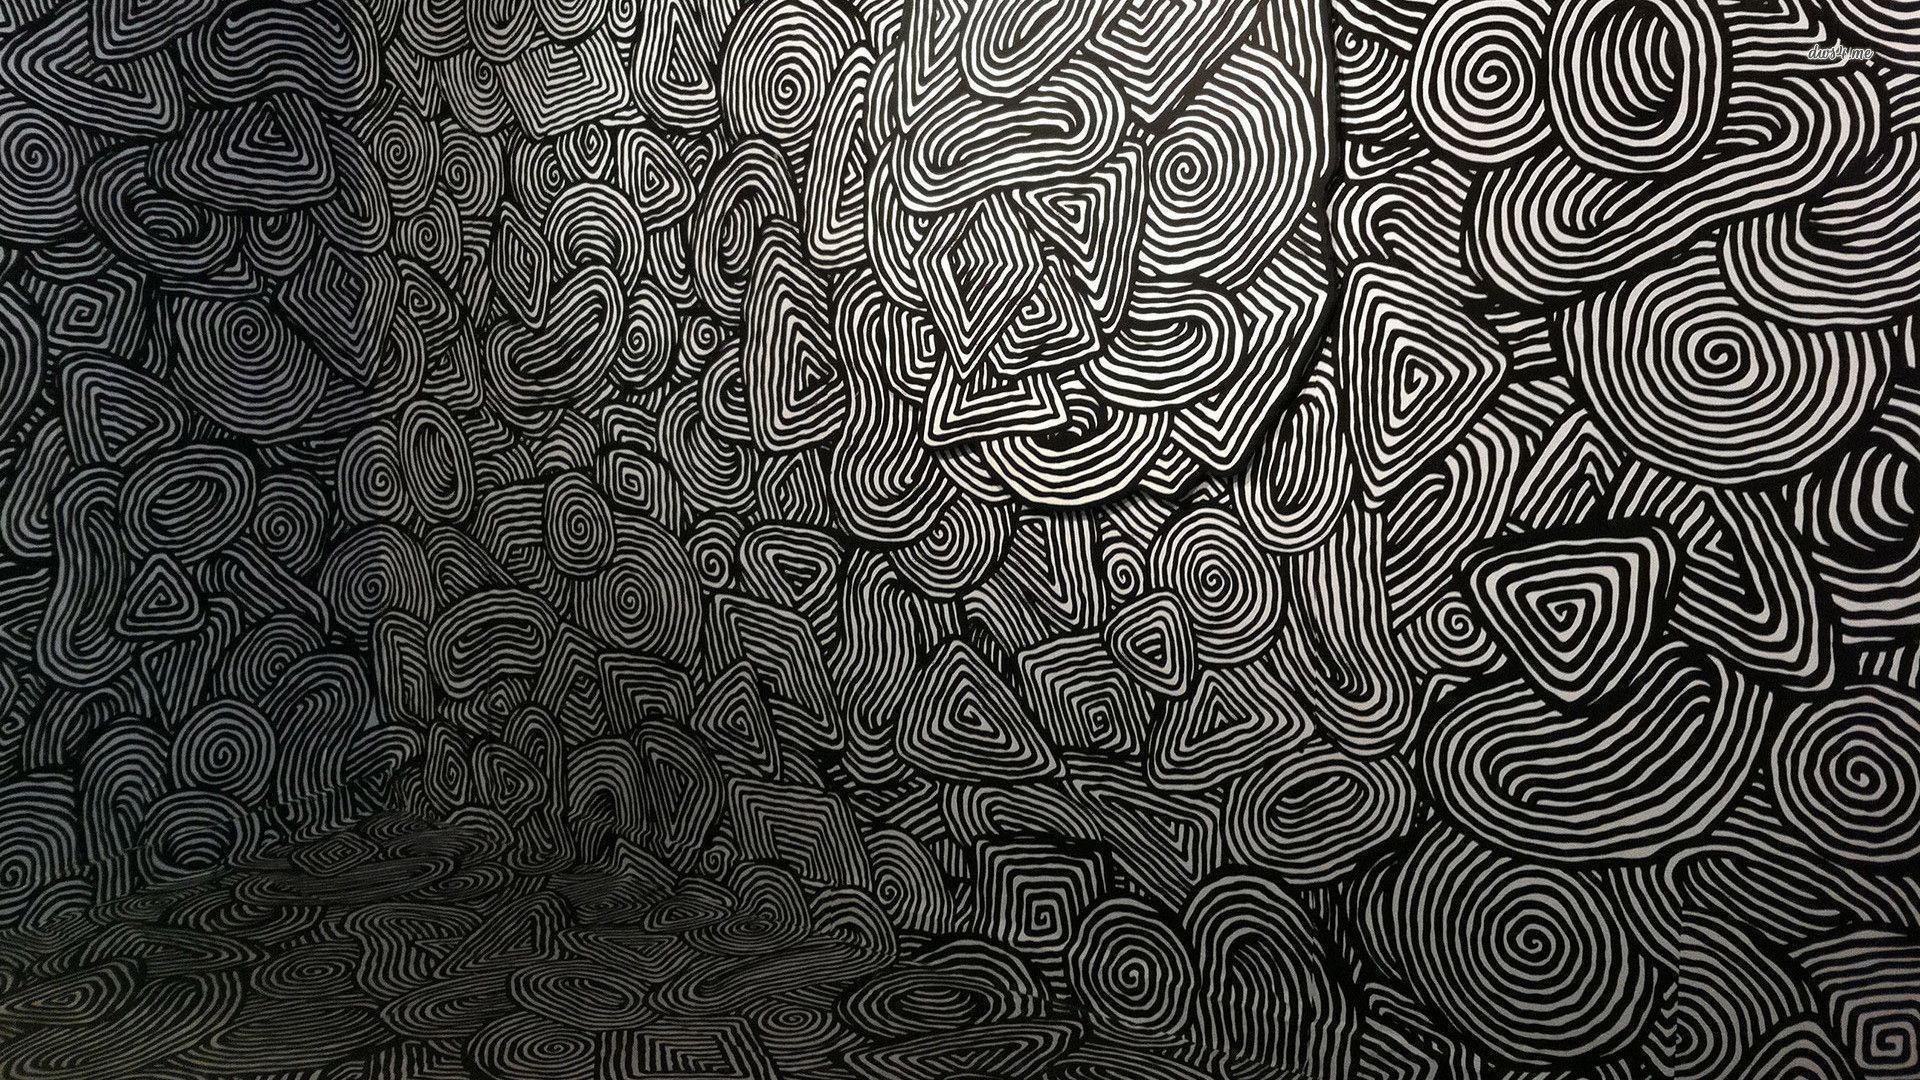 Psychedelic room wallpaper wallpaper - #